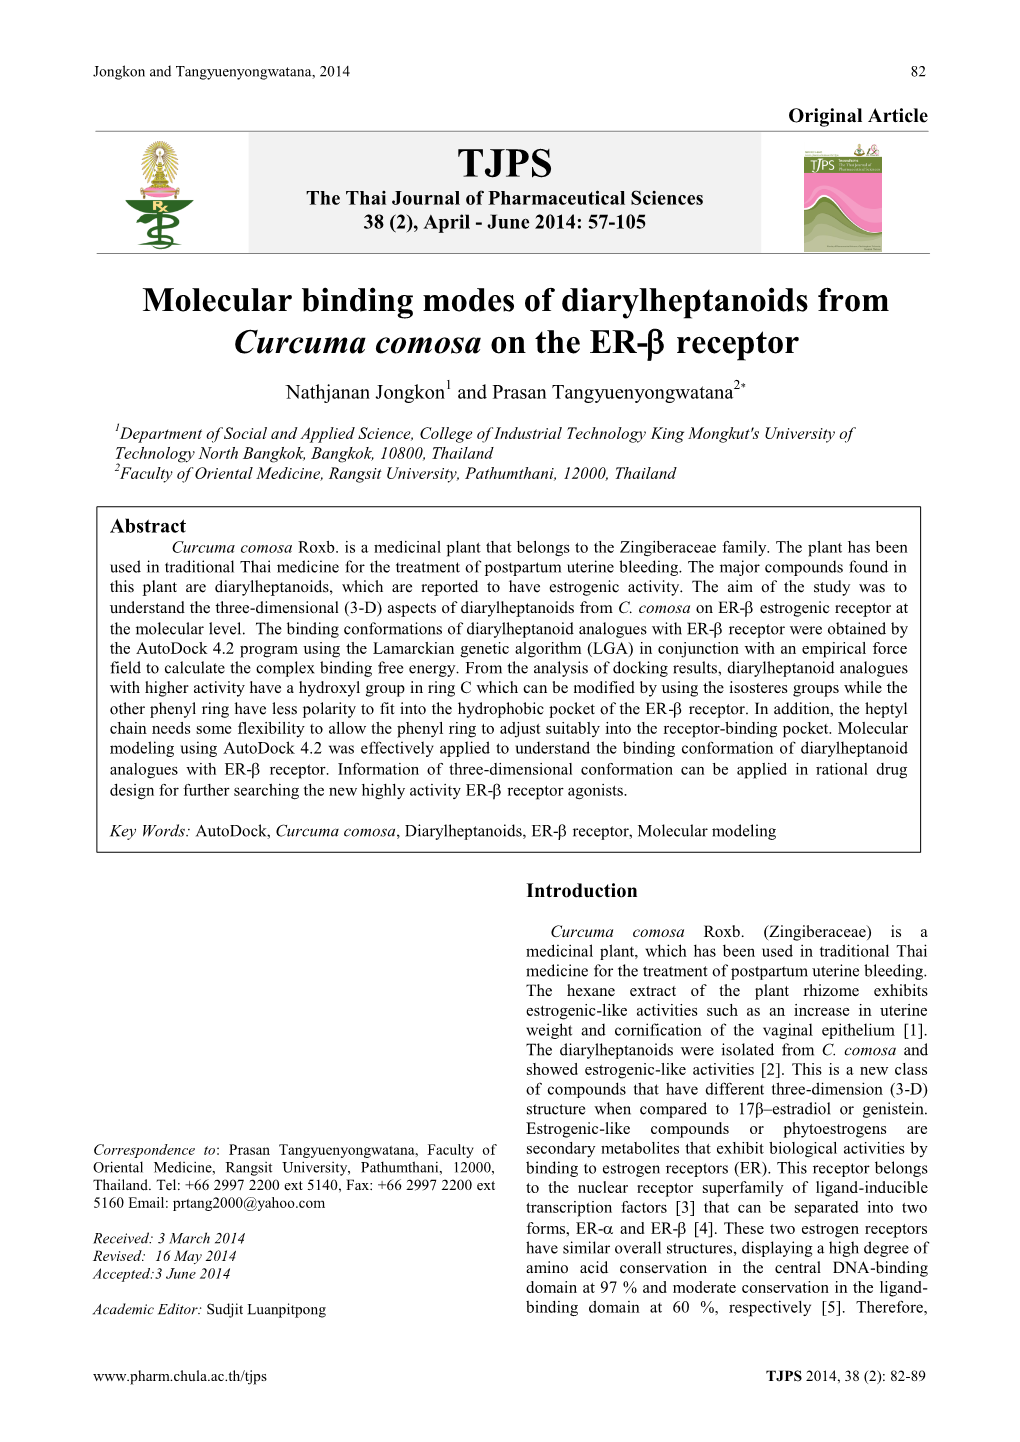 Molecular Binding Modes of Diarylheptanoids from Curcuma